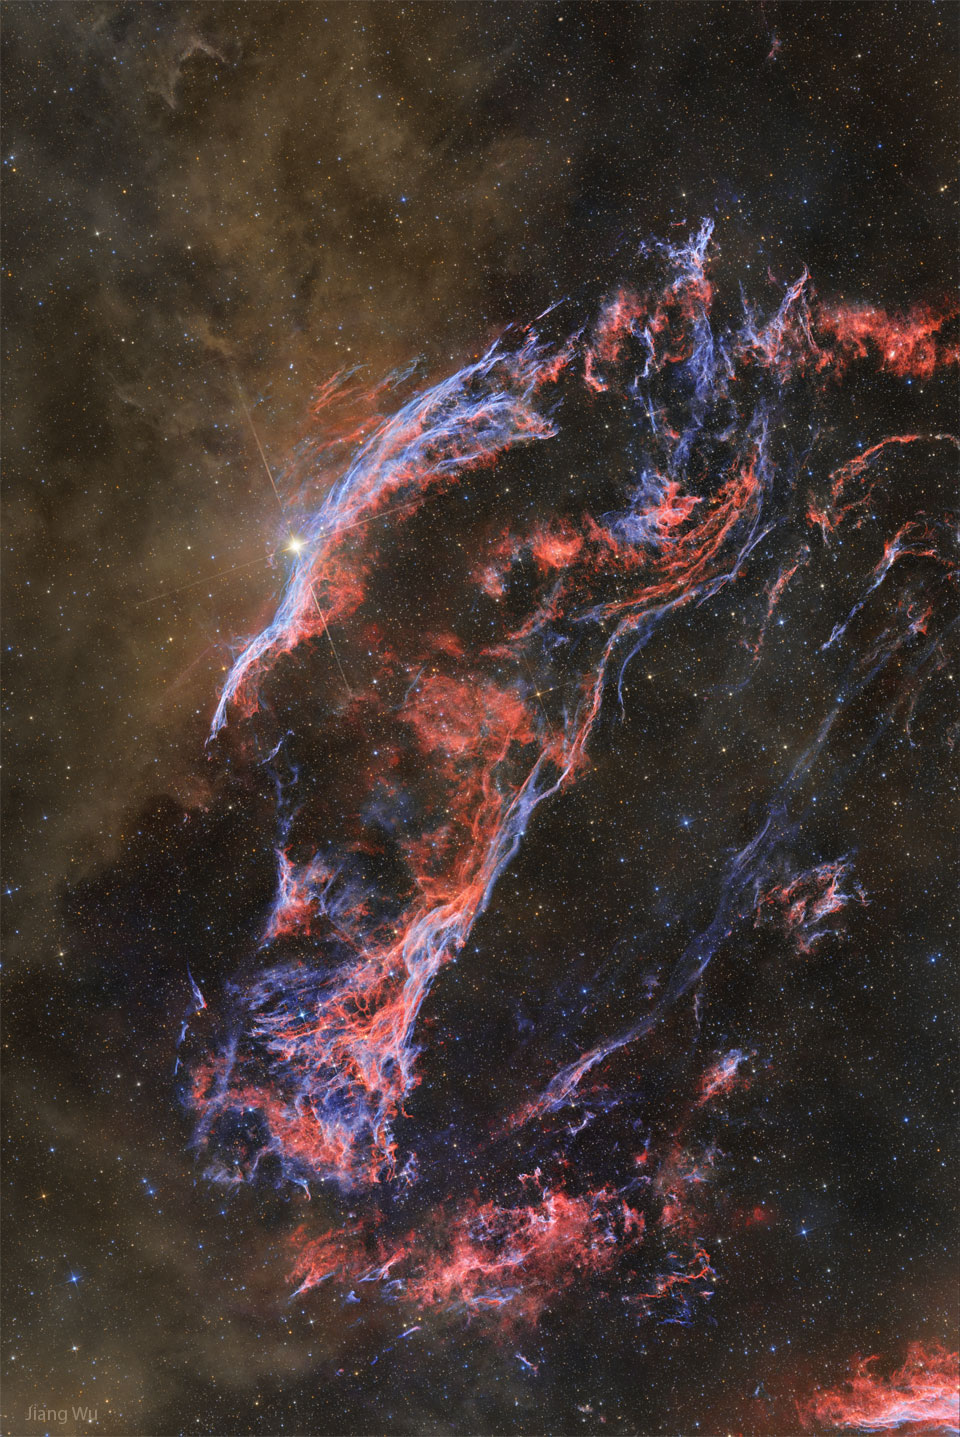 Zachodni brzeg Mgławicy Welon, pozostałości po supernowej, składa się z niebieskich oraz czerwonych
włókien gazu, na lewo od których znajduje się pył, świecący na brązowo.
Więcej szczegółowych informacji w opisie poniżej.